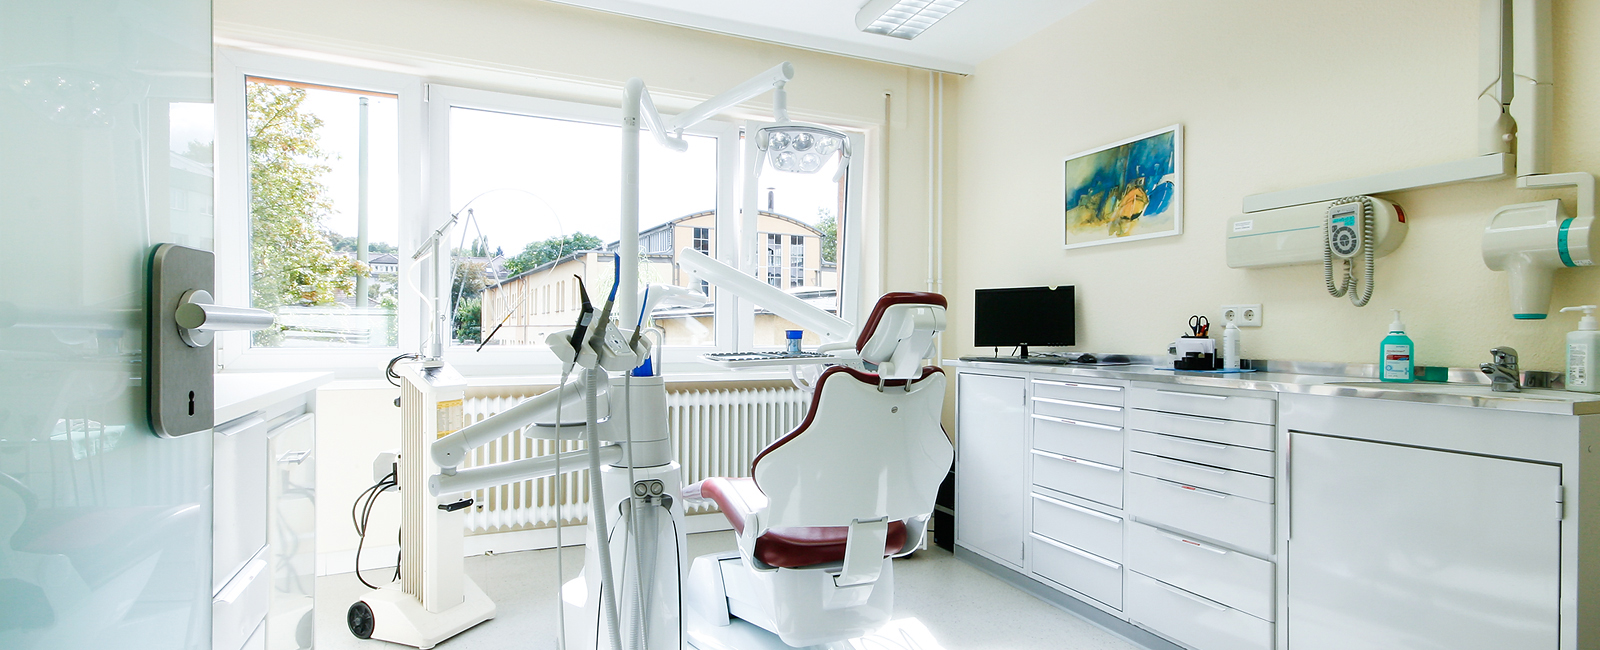 Behanldungszimmer mit Geräten für die Zahnreinigung